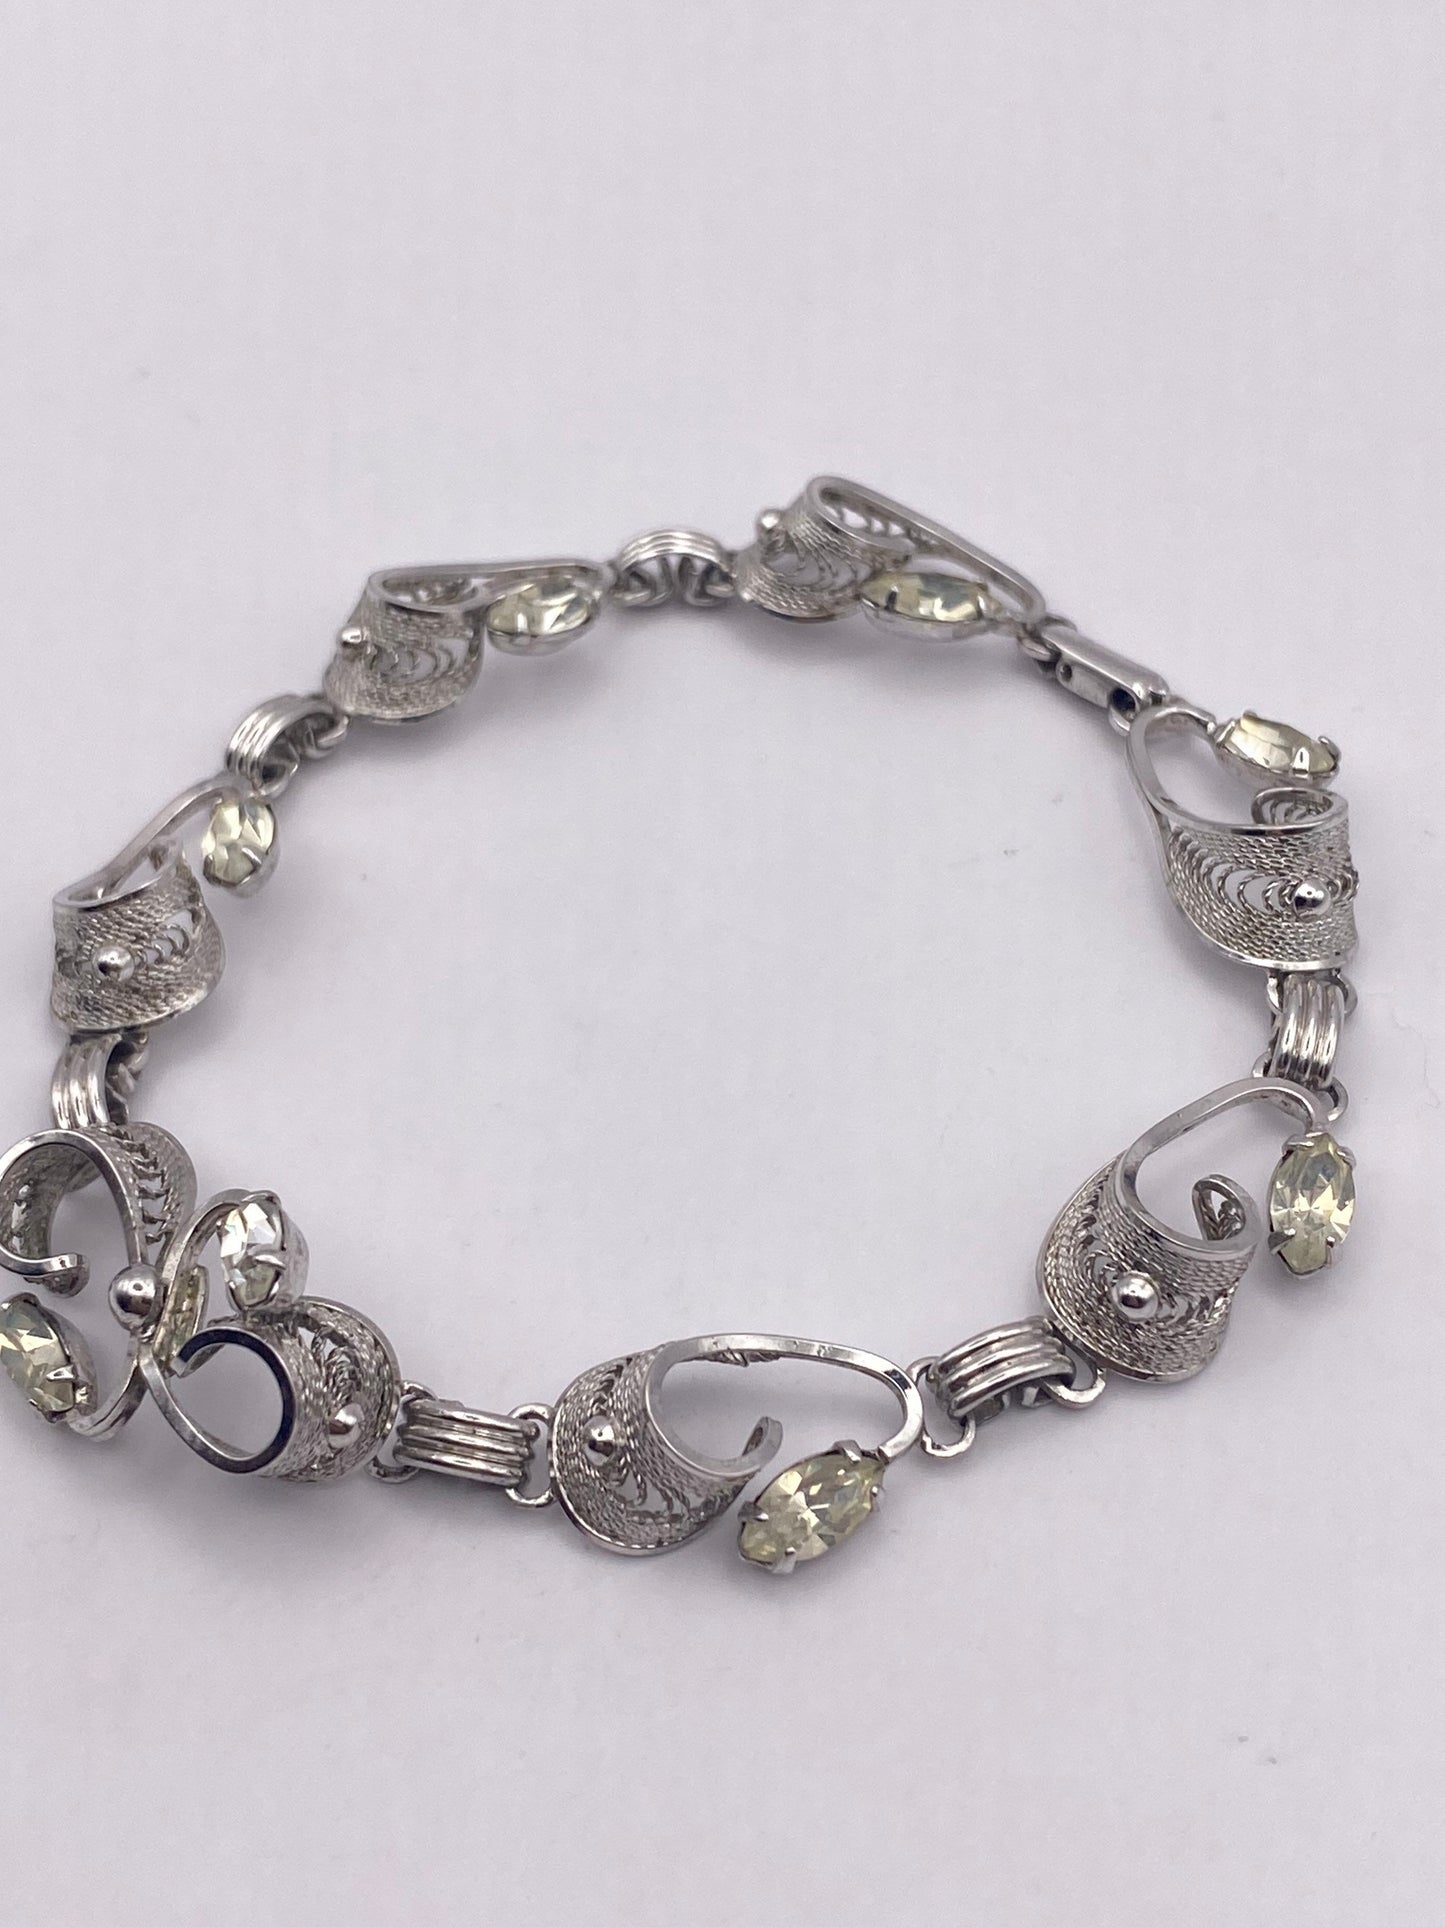 Vintage Crystal Rhodium Finished 925 Sterling Silver Tennis Bracelet